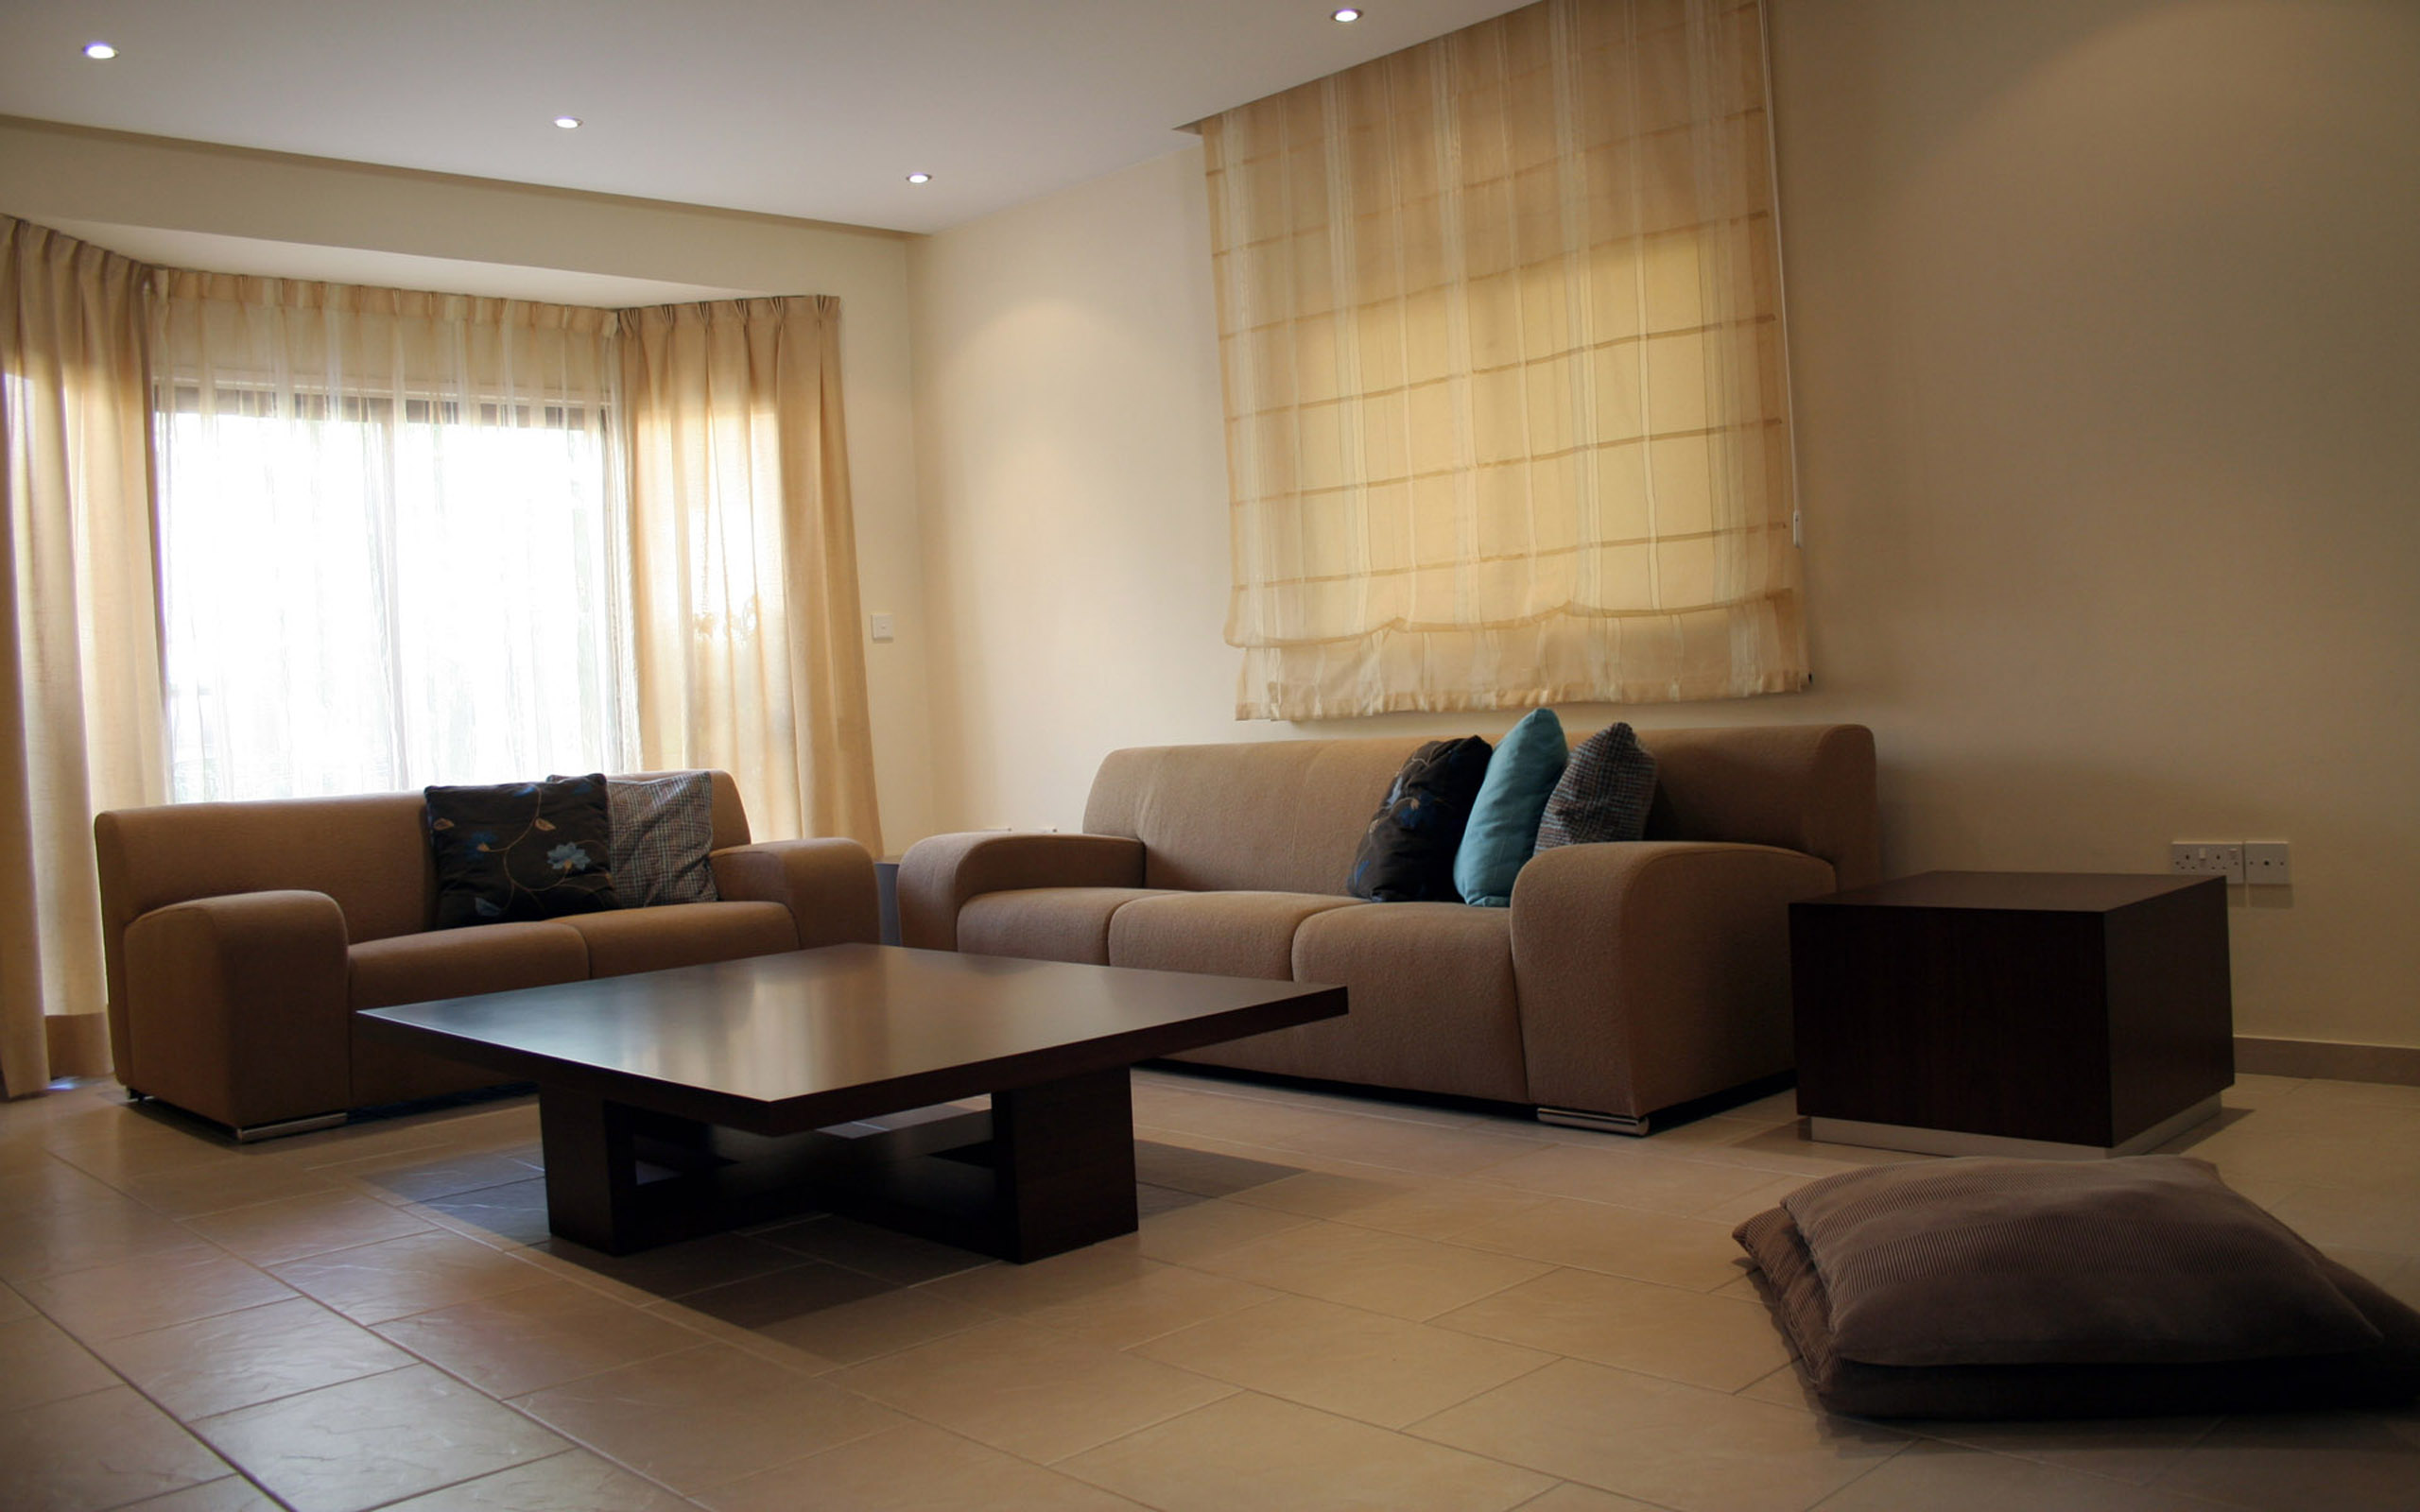 Фото зал обстановка: обстановка в квартире и загородном доме, элементы интерьера